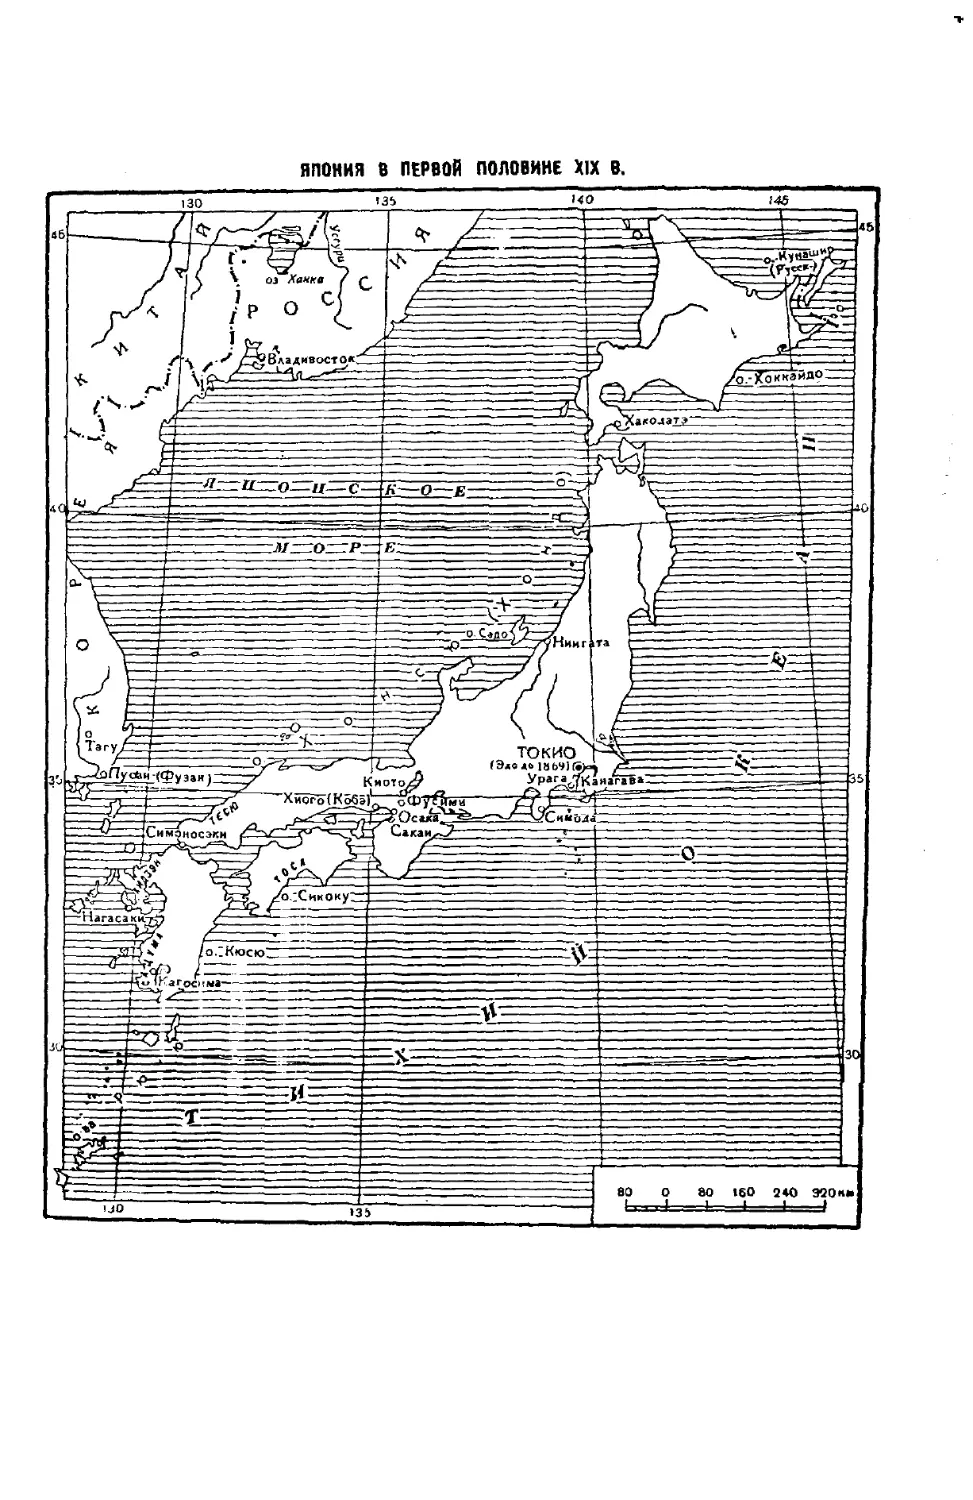 КАРТА — Япония  в  первой  половине XIX в